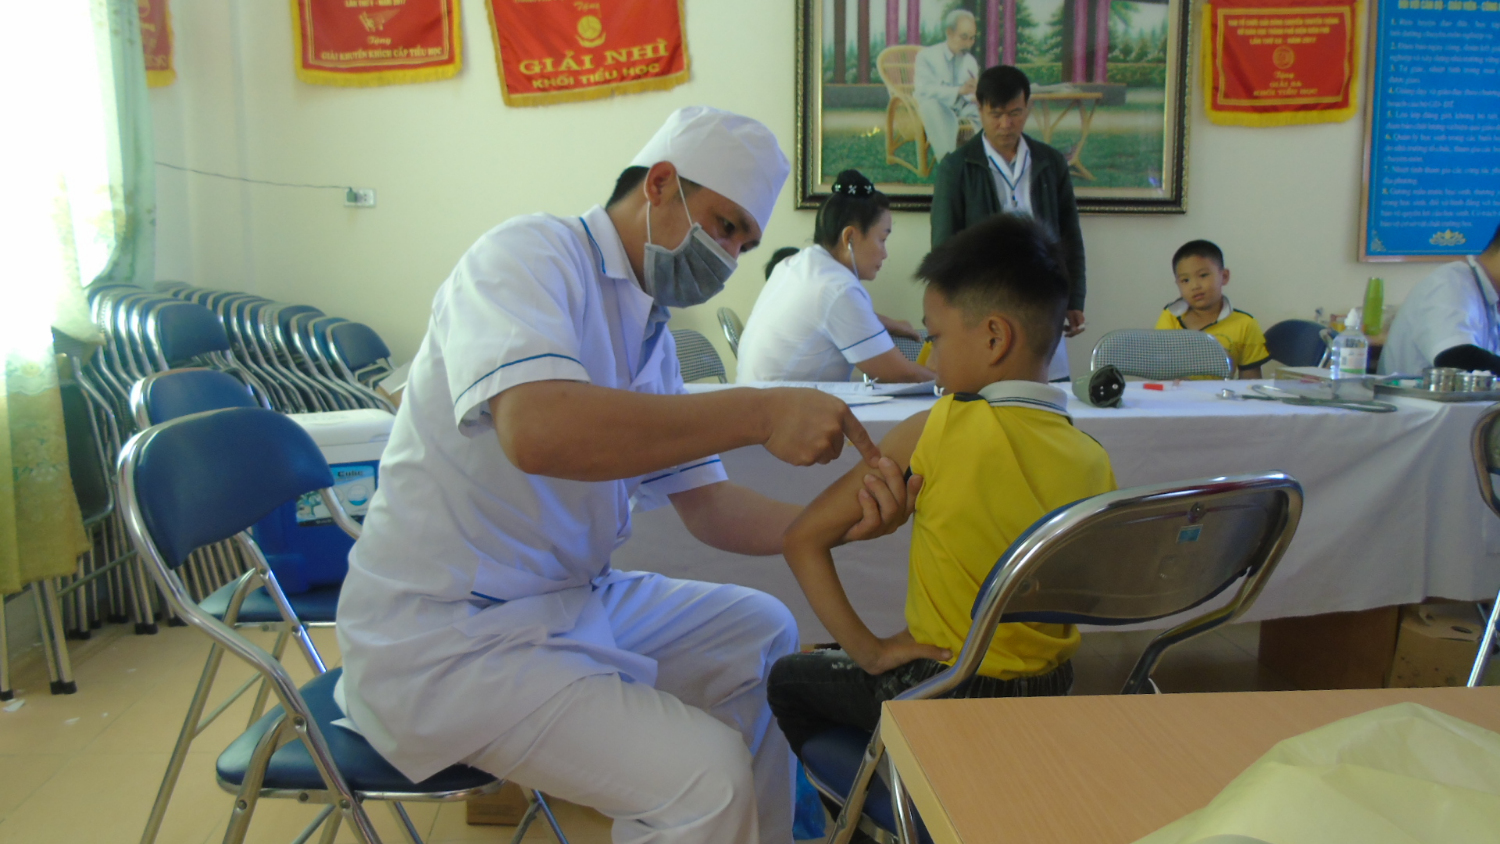 Trường Tiểu học Noong Bua tổ chức tiêm bổ sung vắc xin Uốn ván – Bạch hầu (TD) năm 2020 trên địa bàn phường Noong Bua